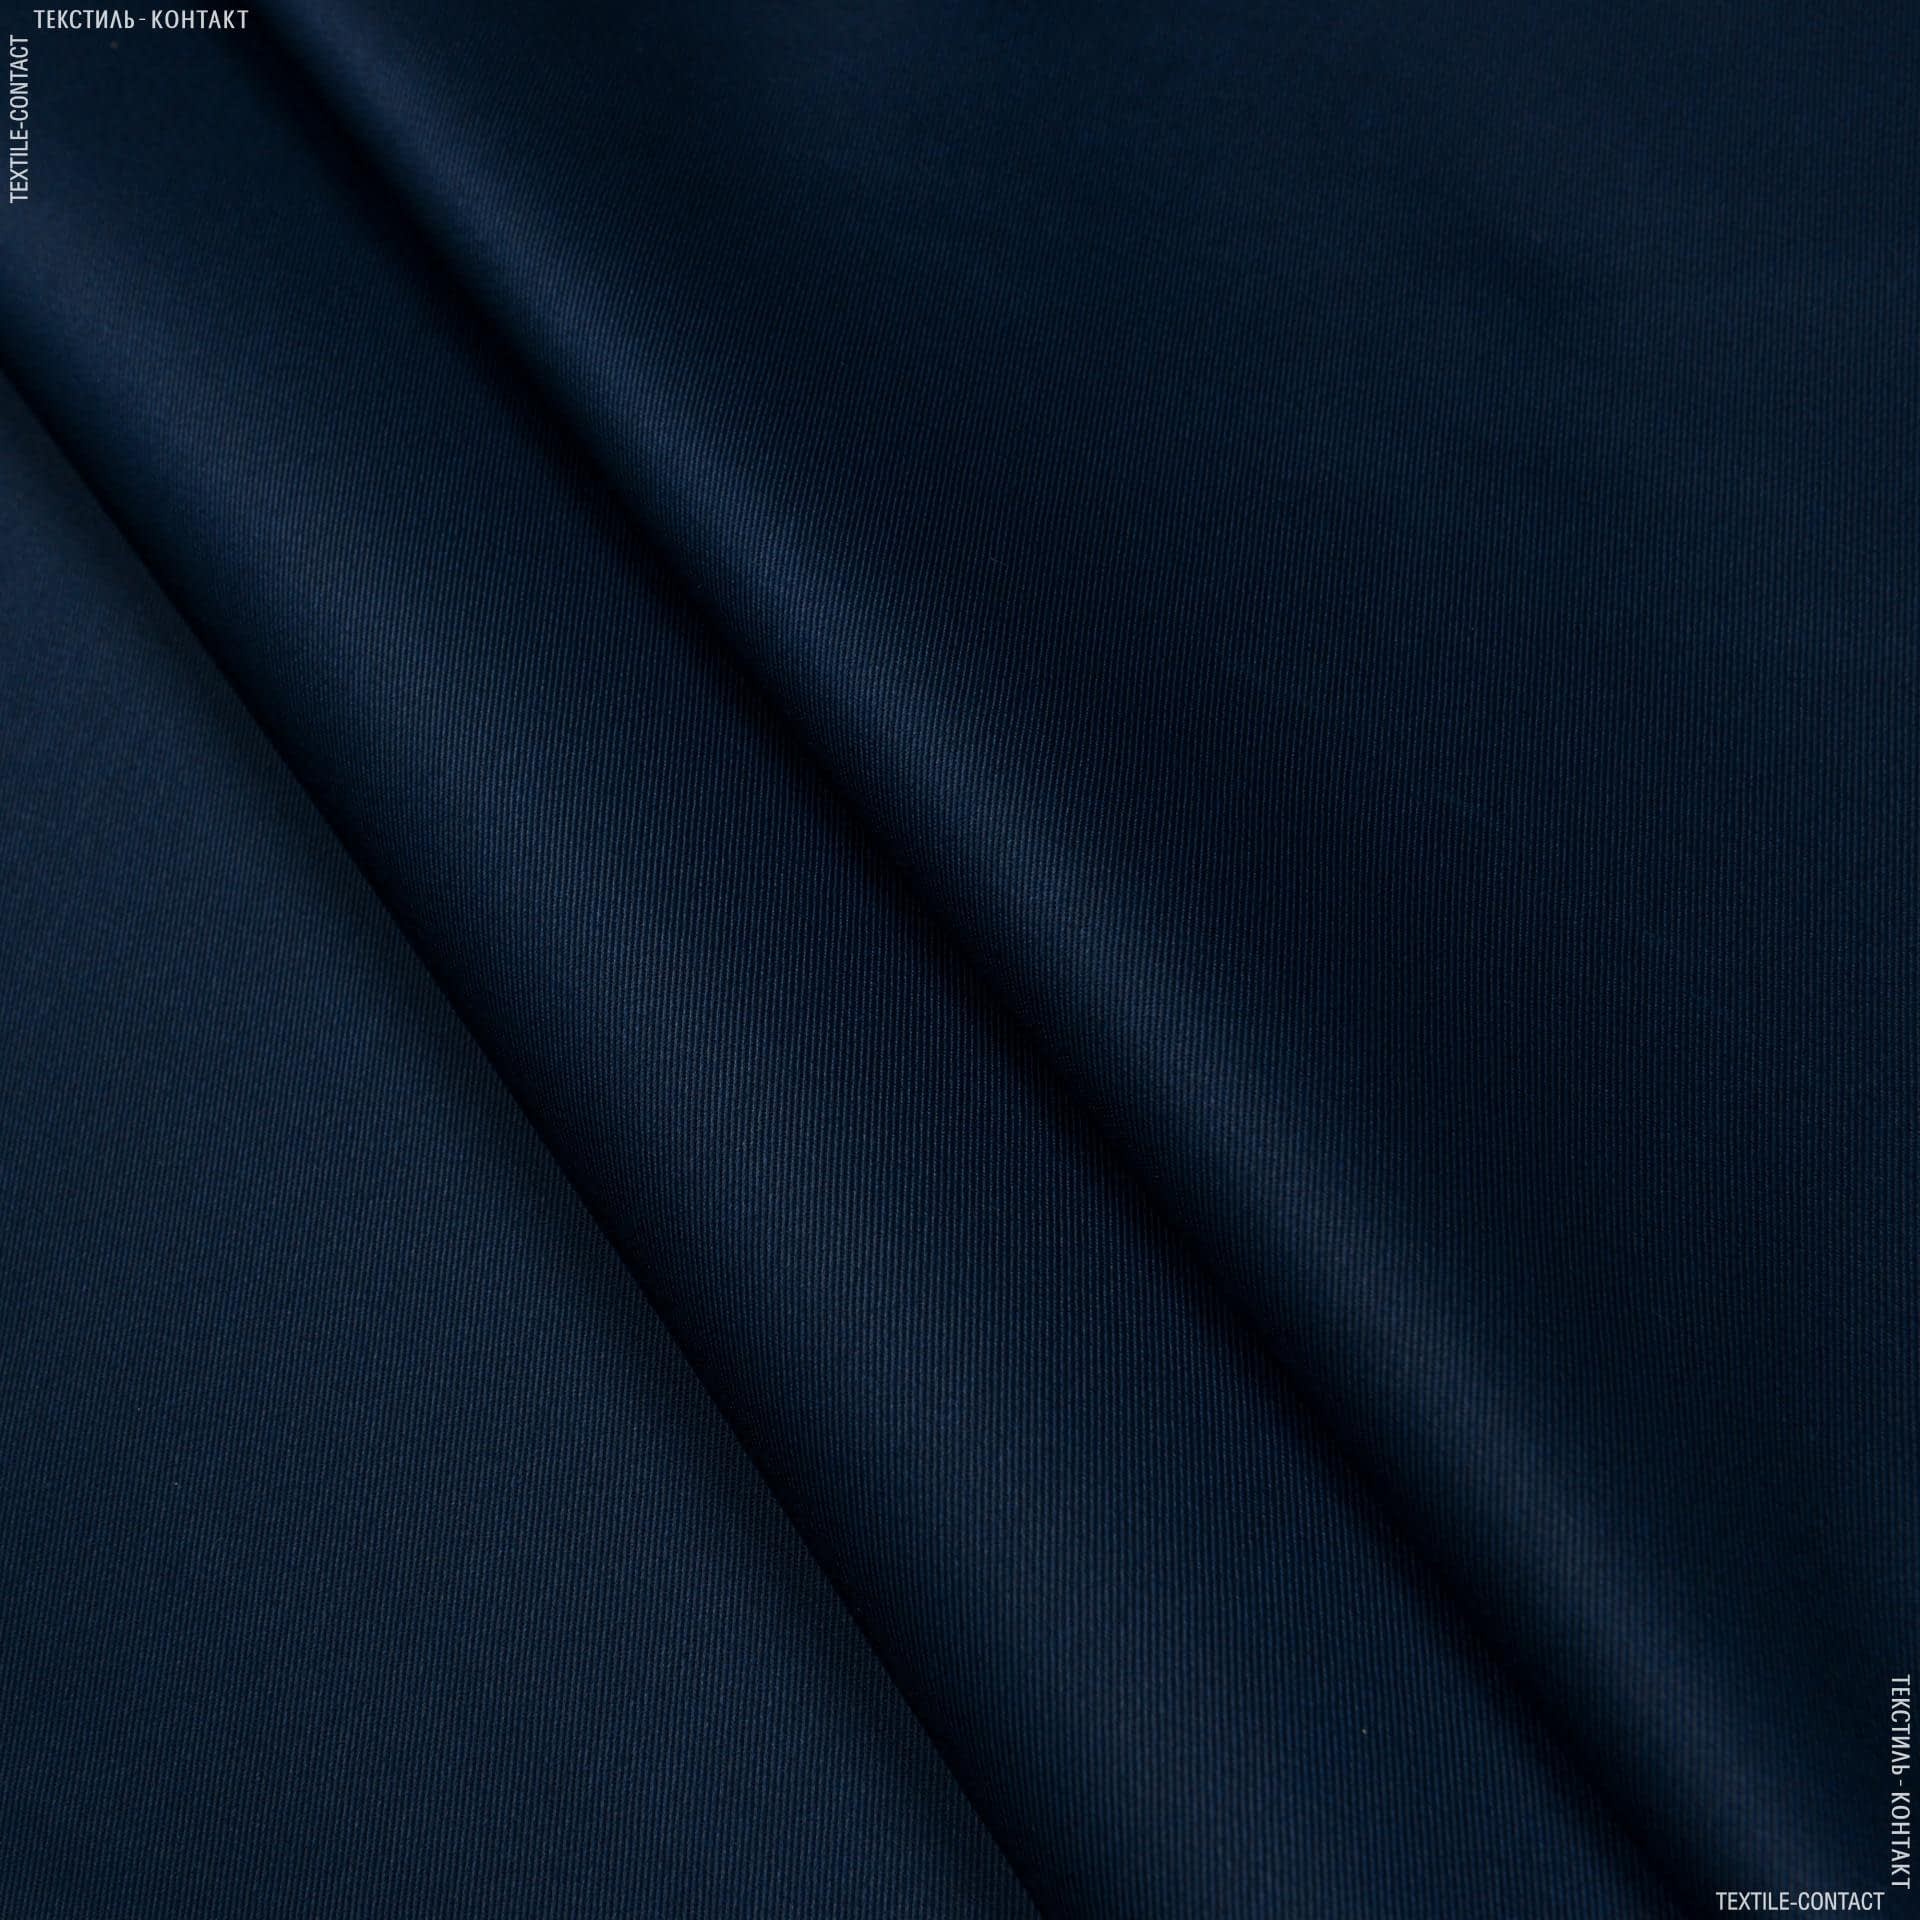 Ткани для рюкзаков - Саржа f-210 темно-синий